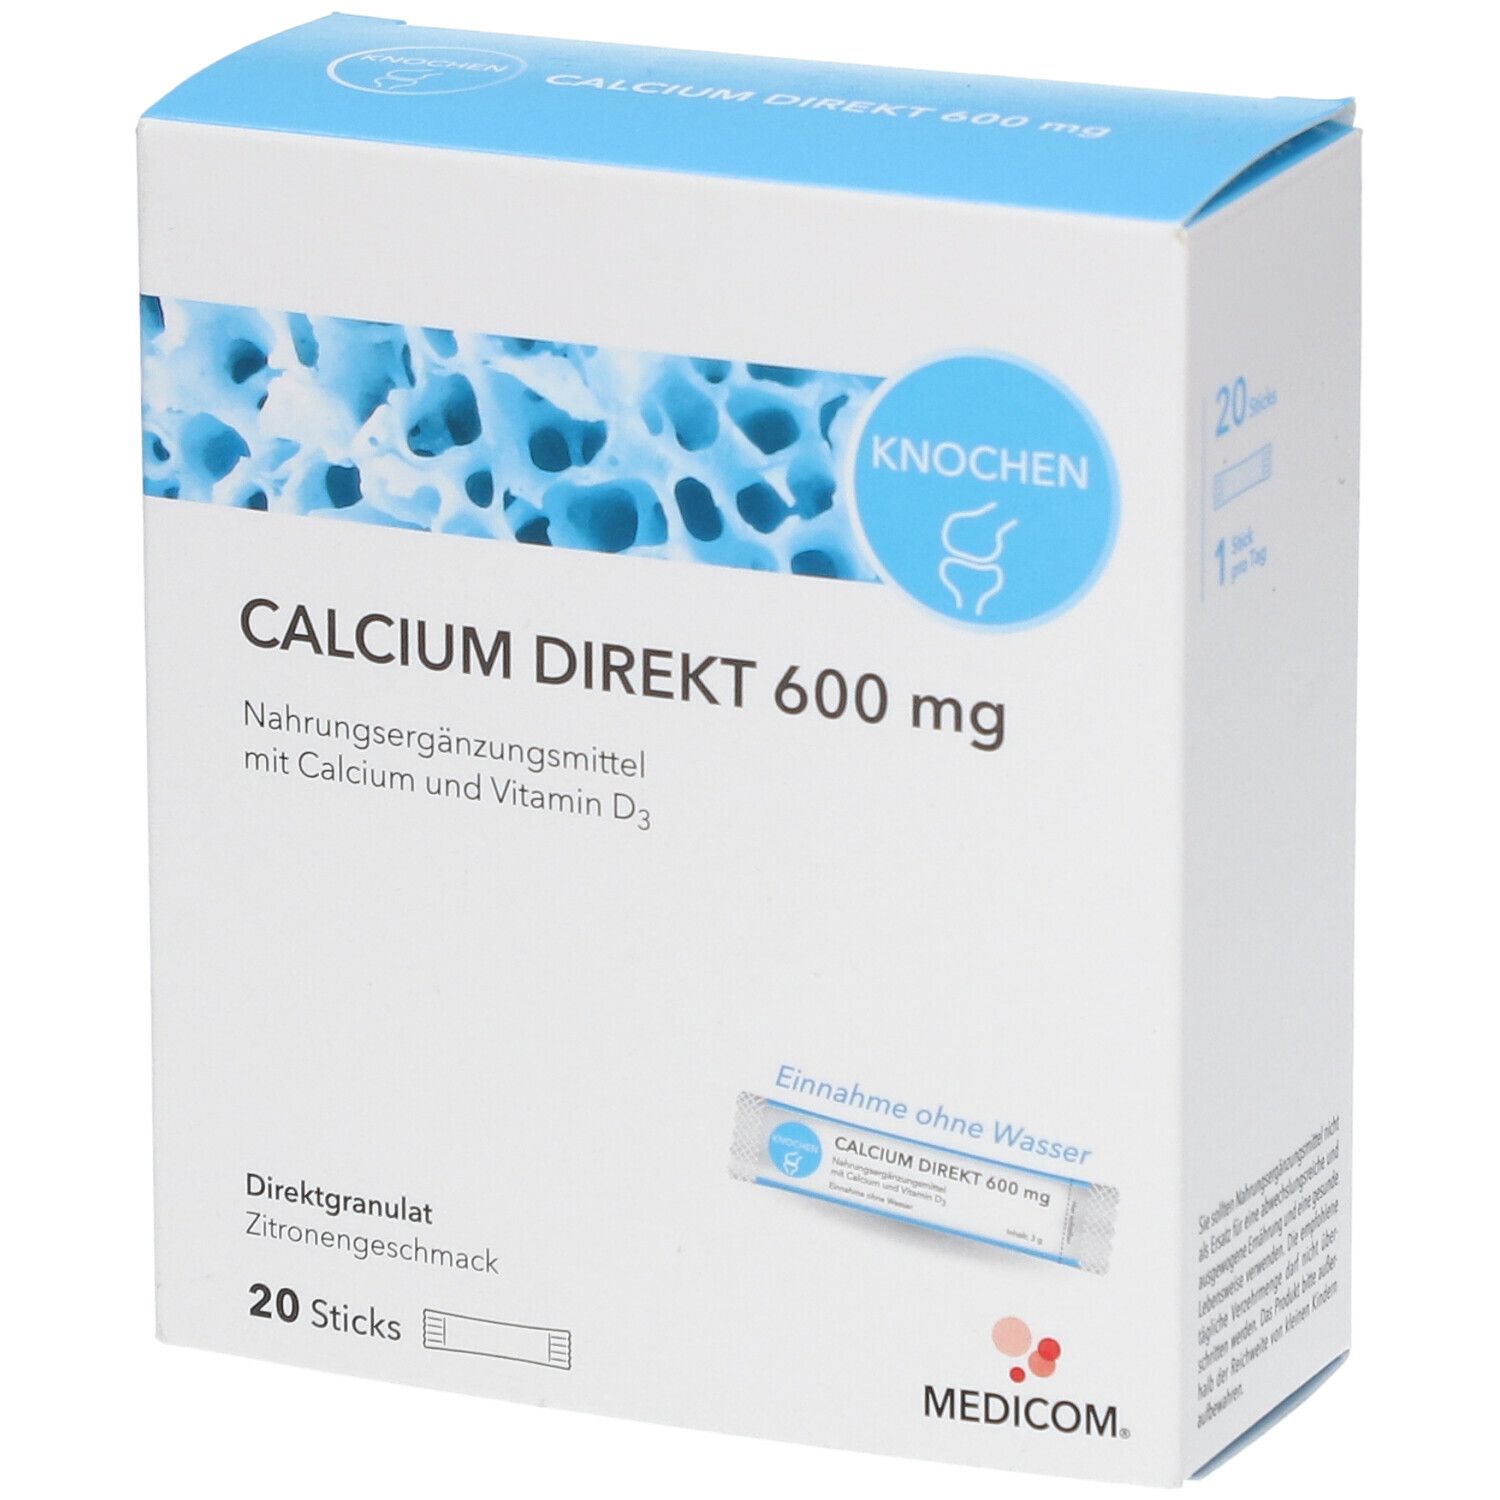 MEDICOM® Calcium Direct 600 mg